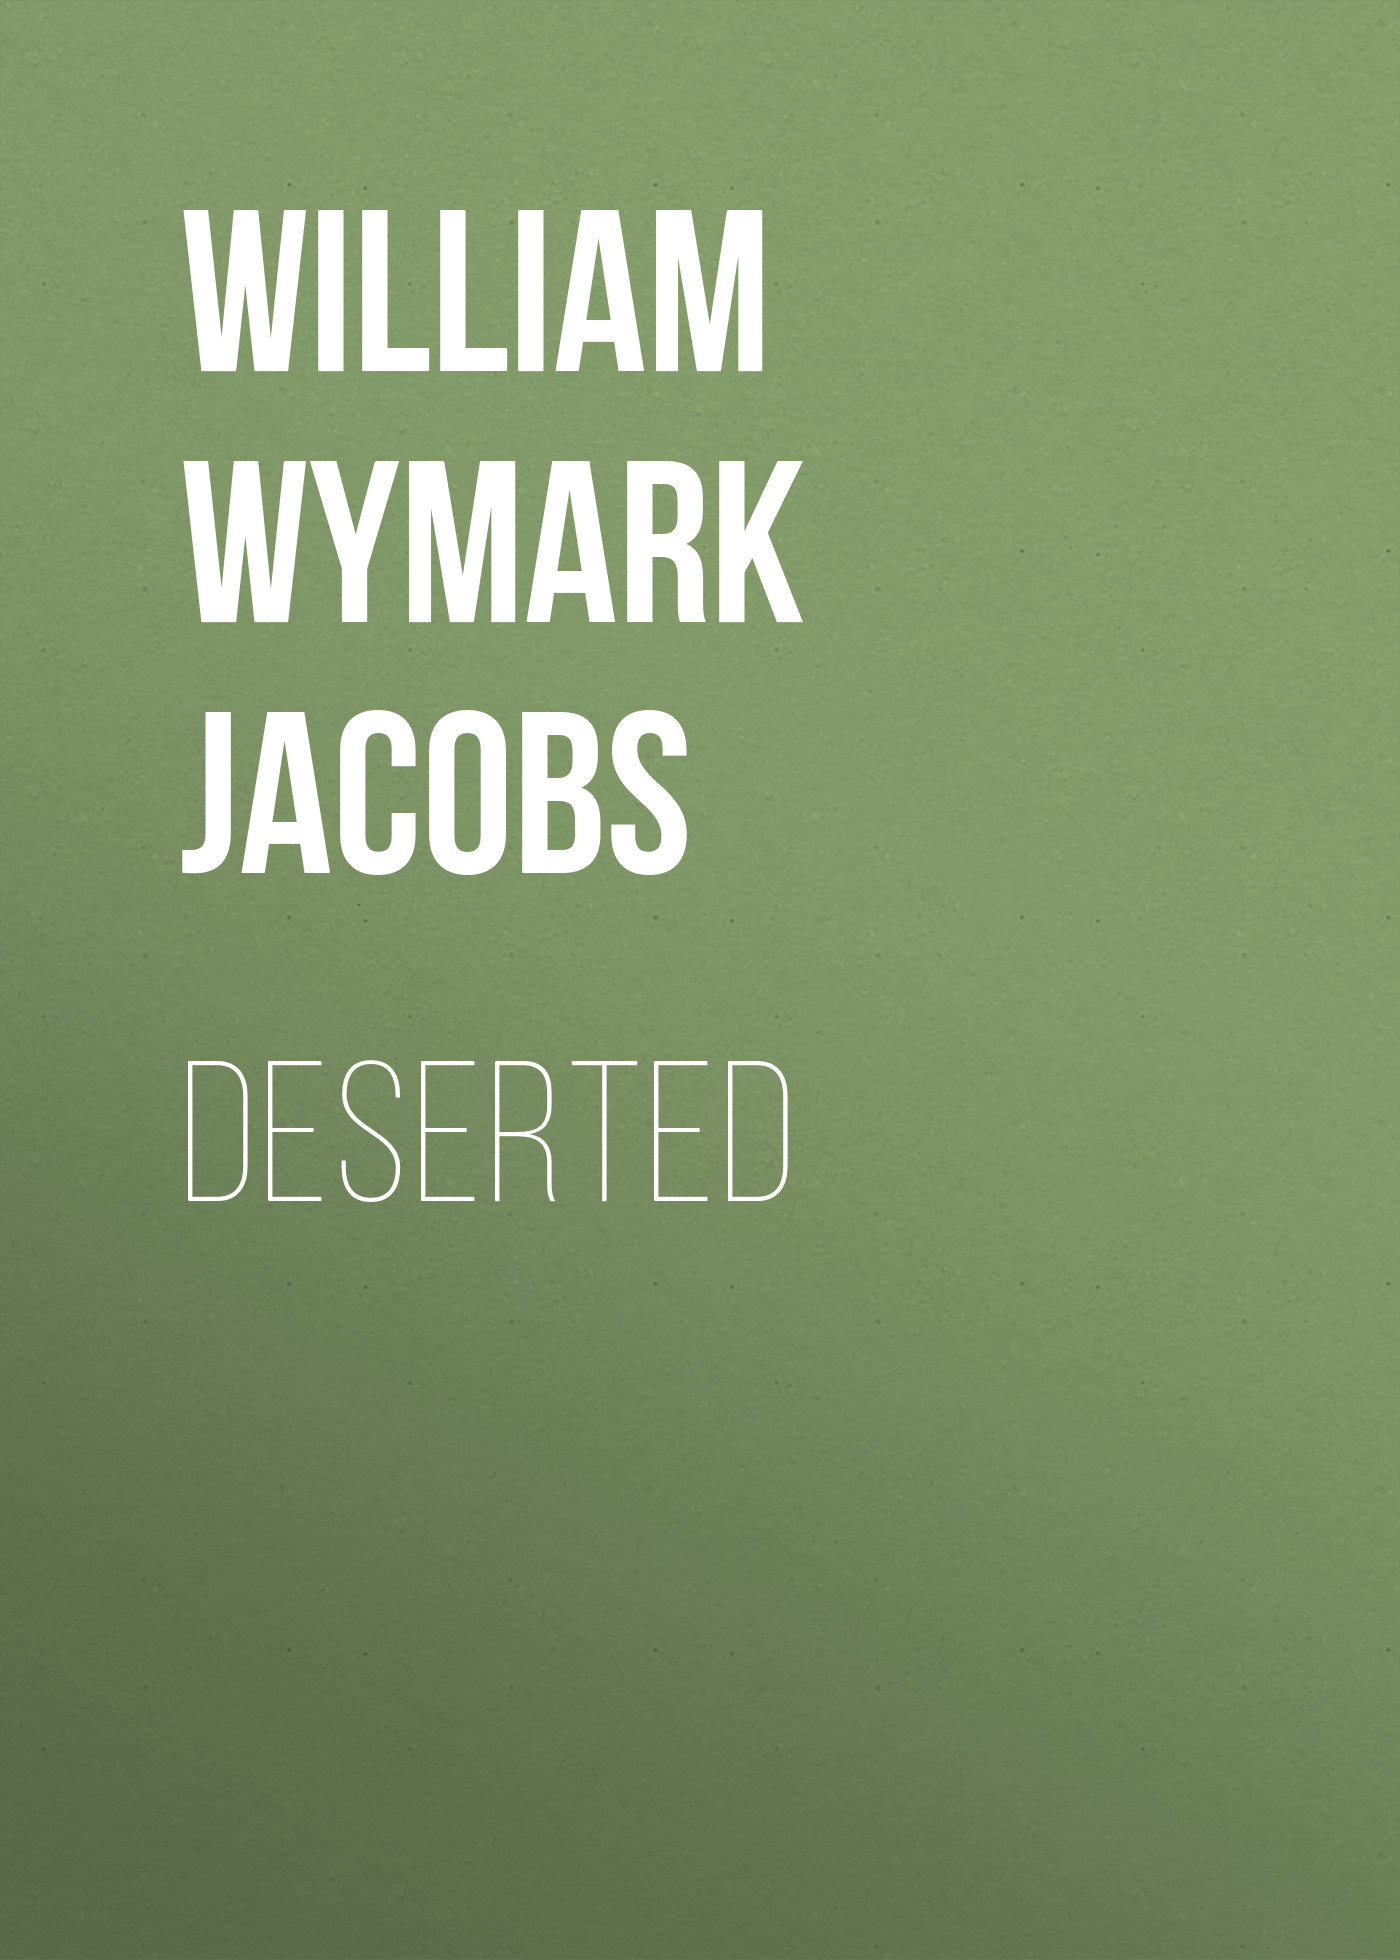 Книга Deserted из серии , созданная William Wymark Jacobs, может относится к жанру Зарубежный юмор, Зарубежная старинная литература, Зарубежная классика. Стоимость электронной книги Deserted с идентификатором 34842806 составляет 0 руб.